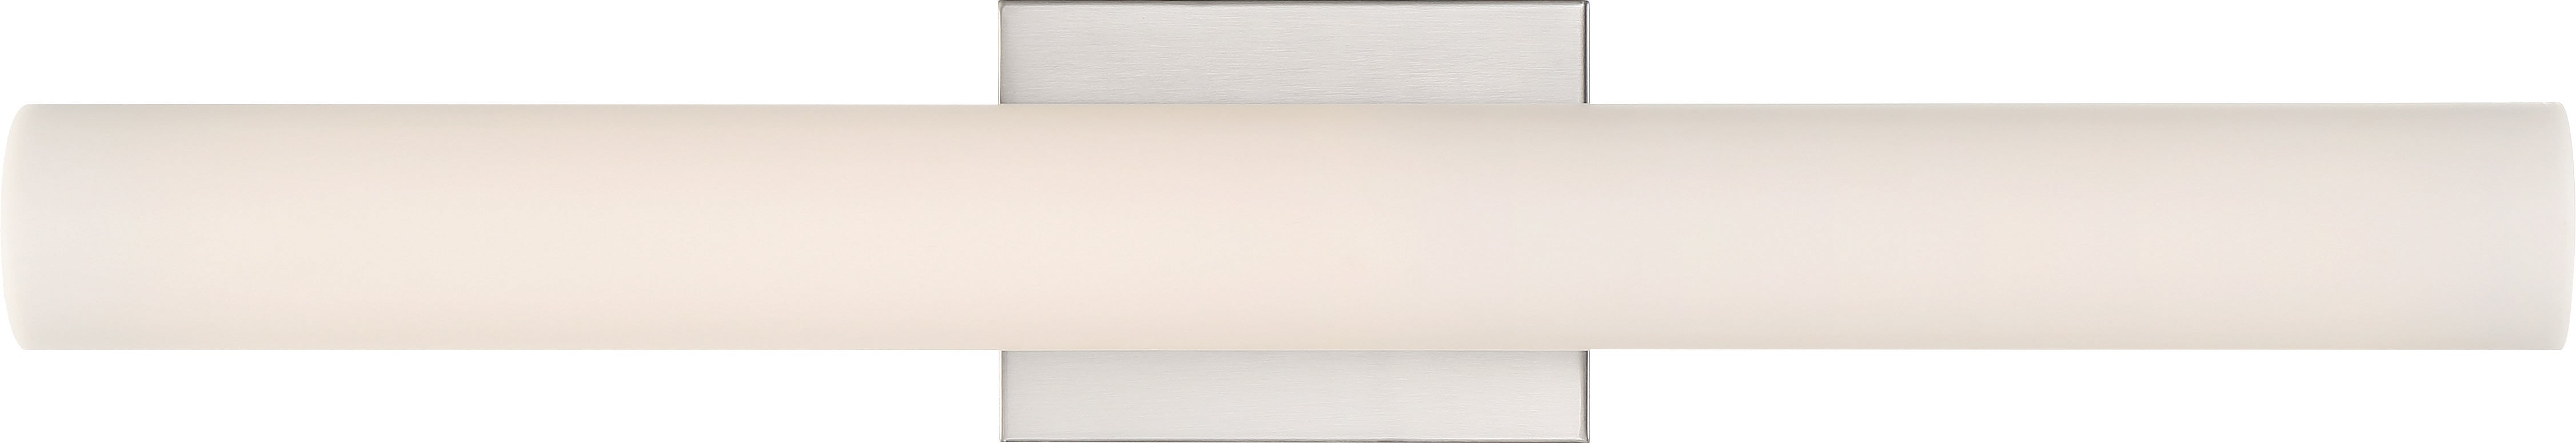 Bend LED Medium Vanity Fixture - Brushed Nickel with White Acrylic